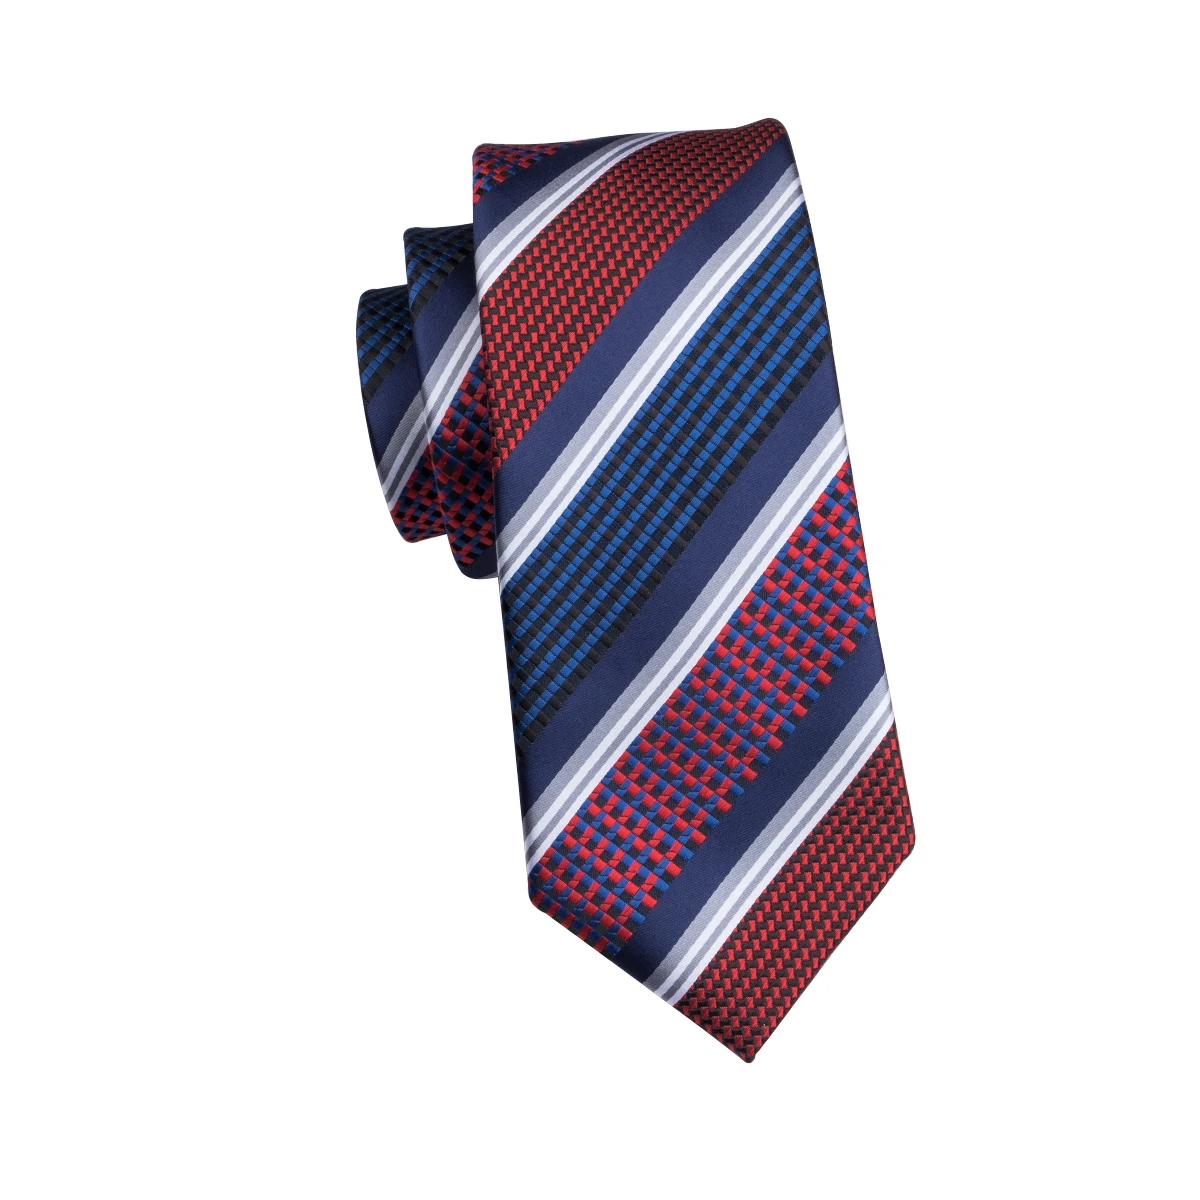 C-1695 Привет-галстук Gravatas связей для Для мужчин полосатый галстук Hanky Cuffinks 100% шелк 8,5 см платок костюм бизнес